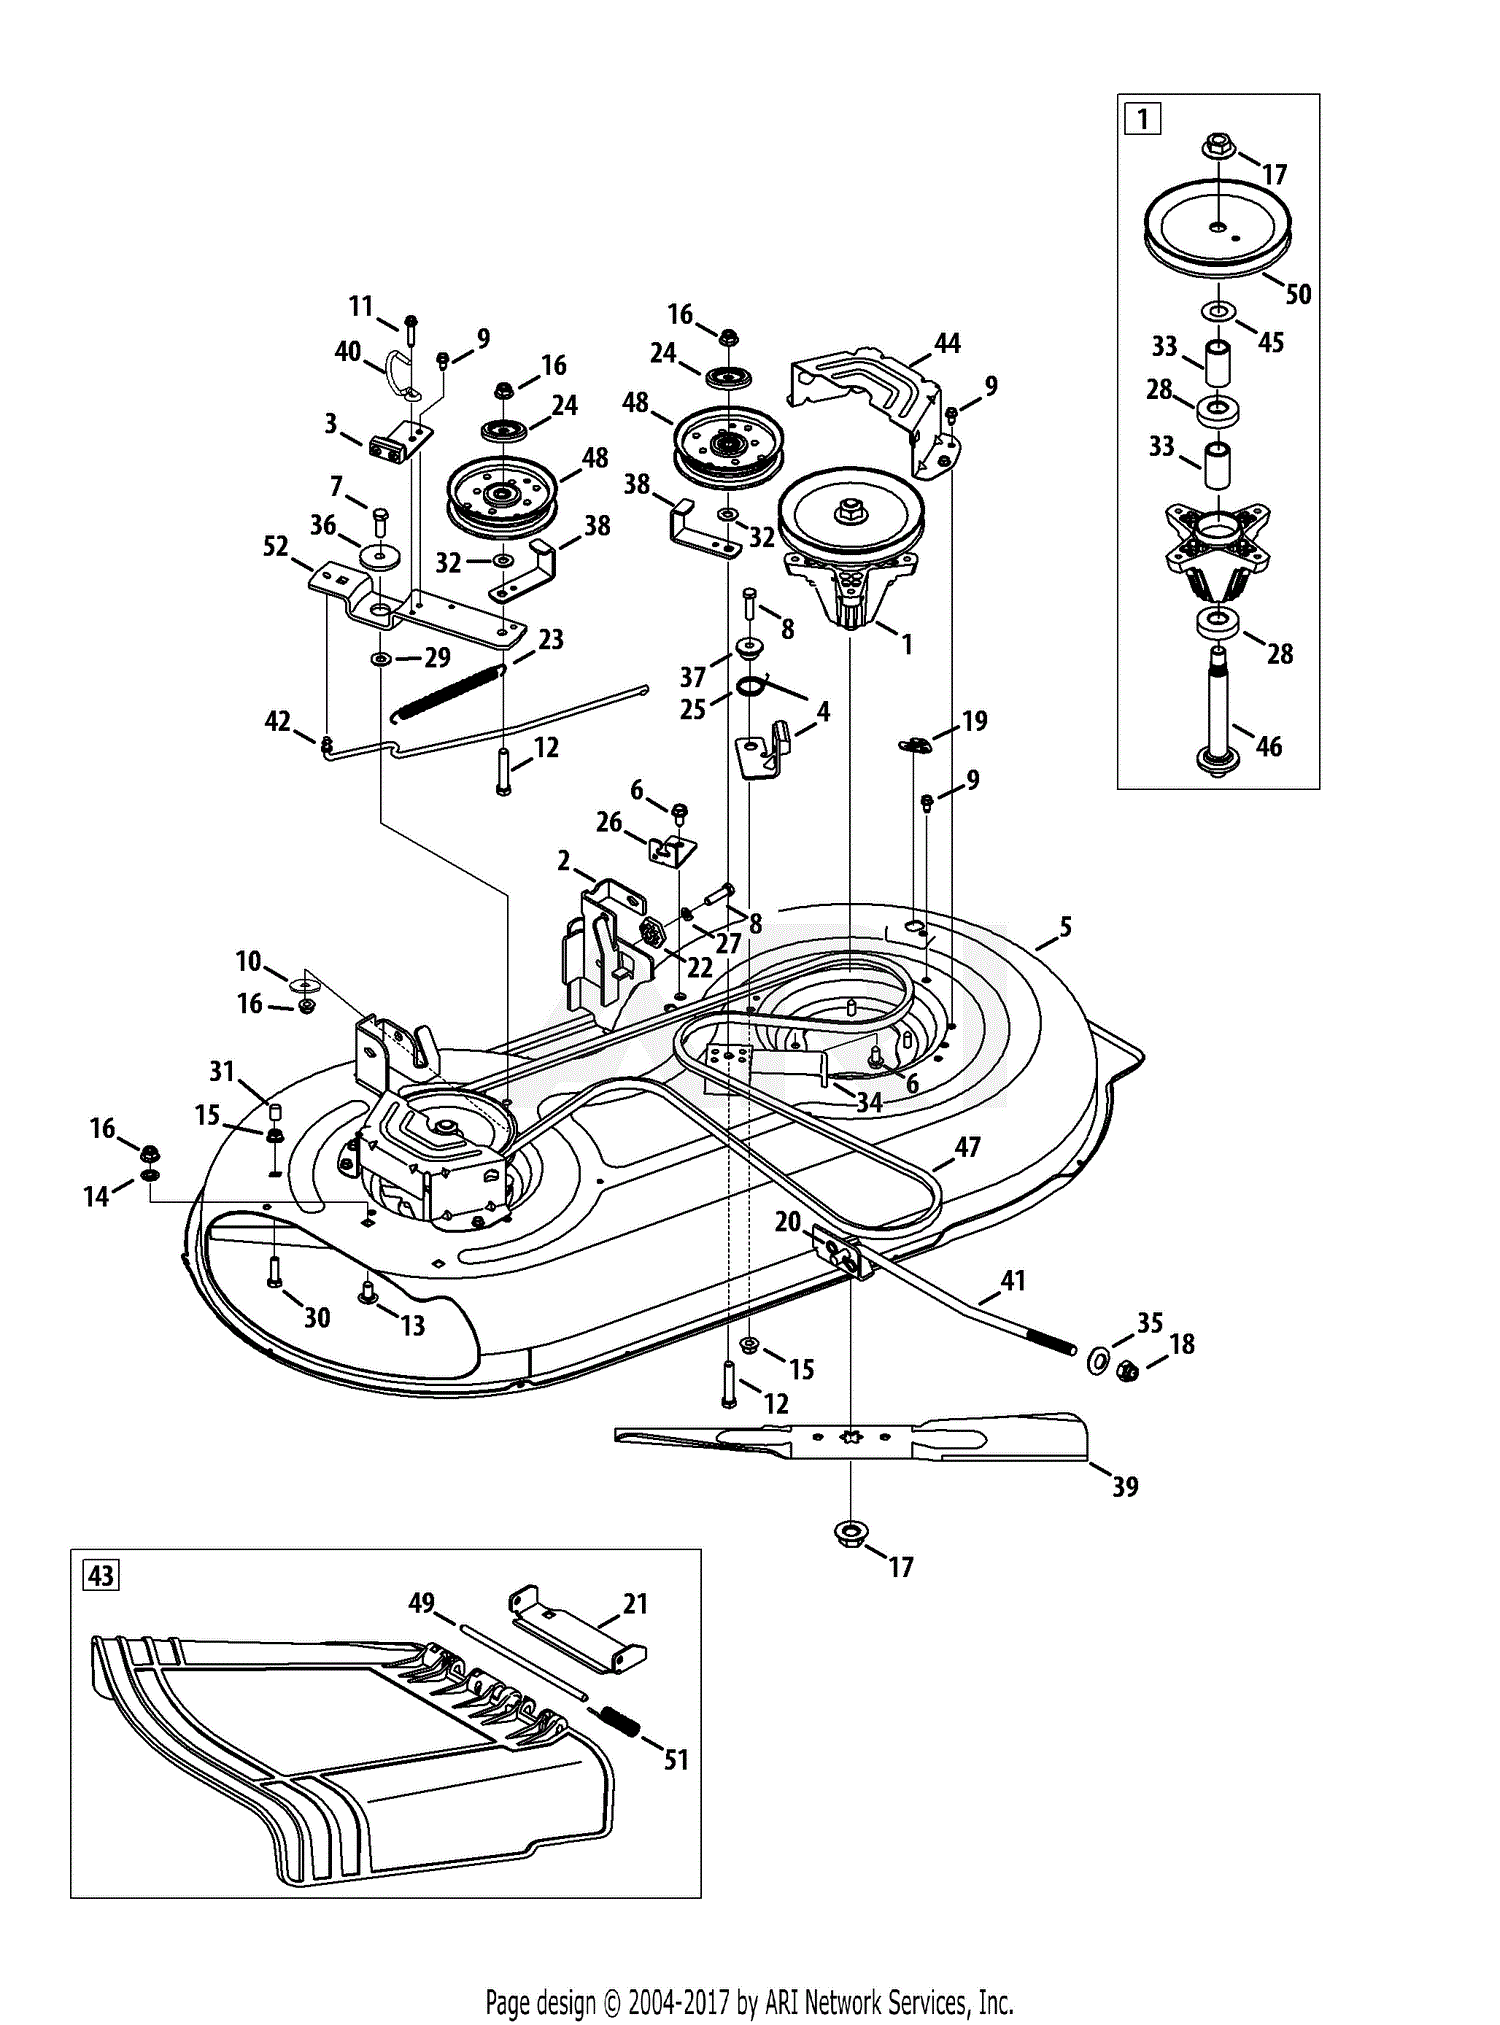 service manual for a troy bilt model number 13wn77ks011